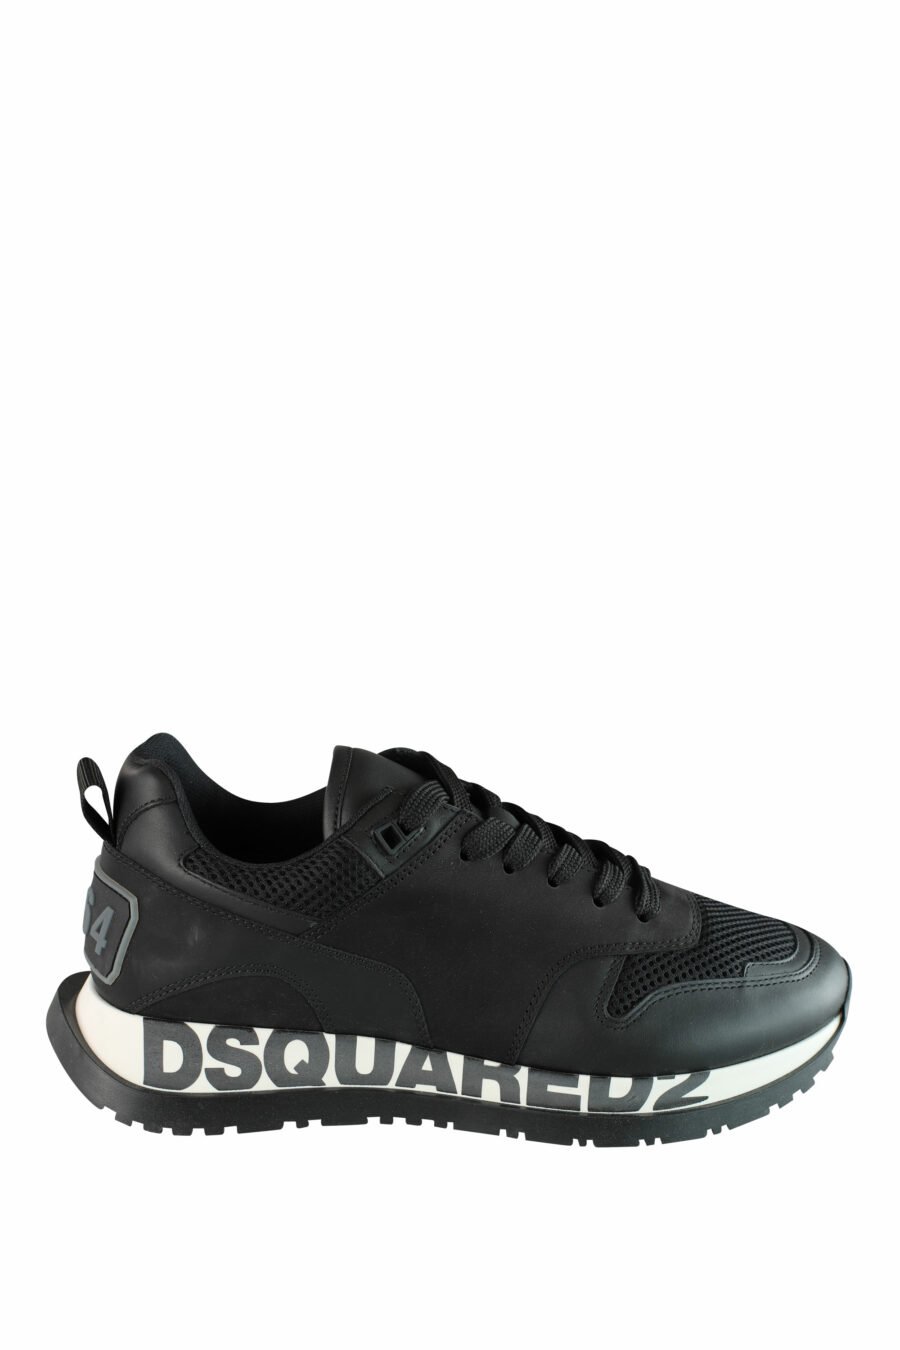 Schwarze Laufschuhe mit weißer Sohle und schwarzem Logo - IMG 1430